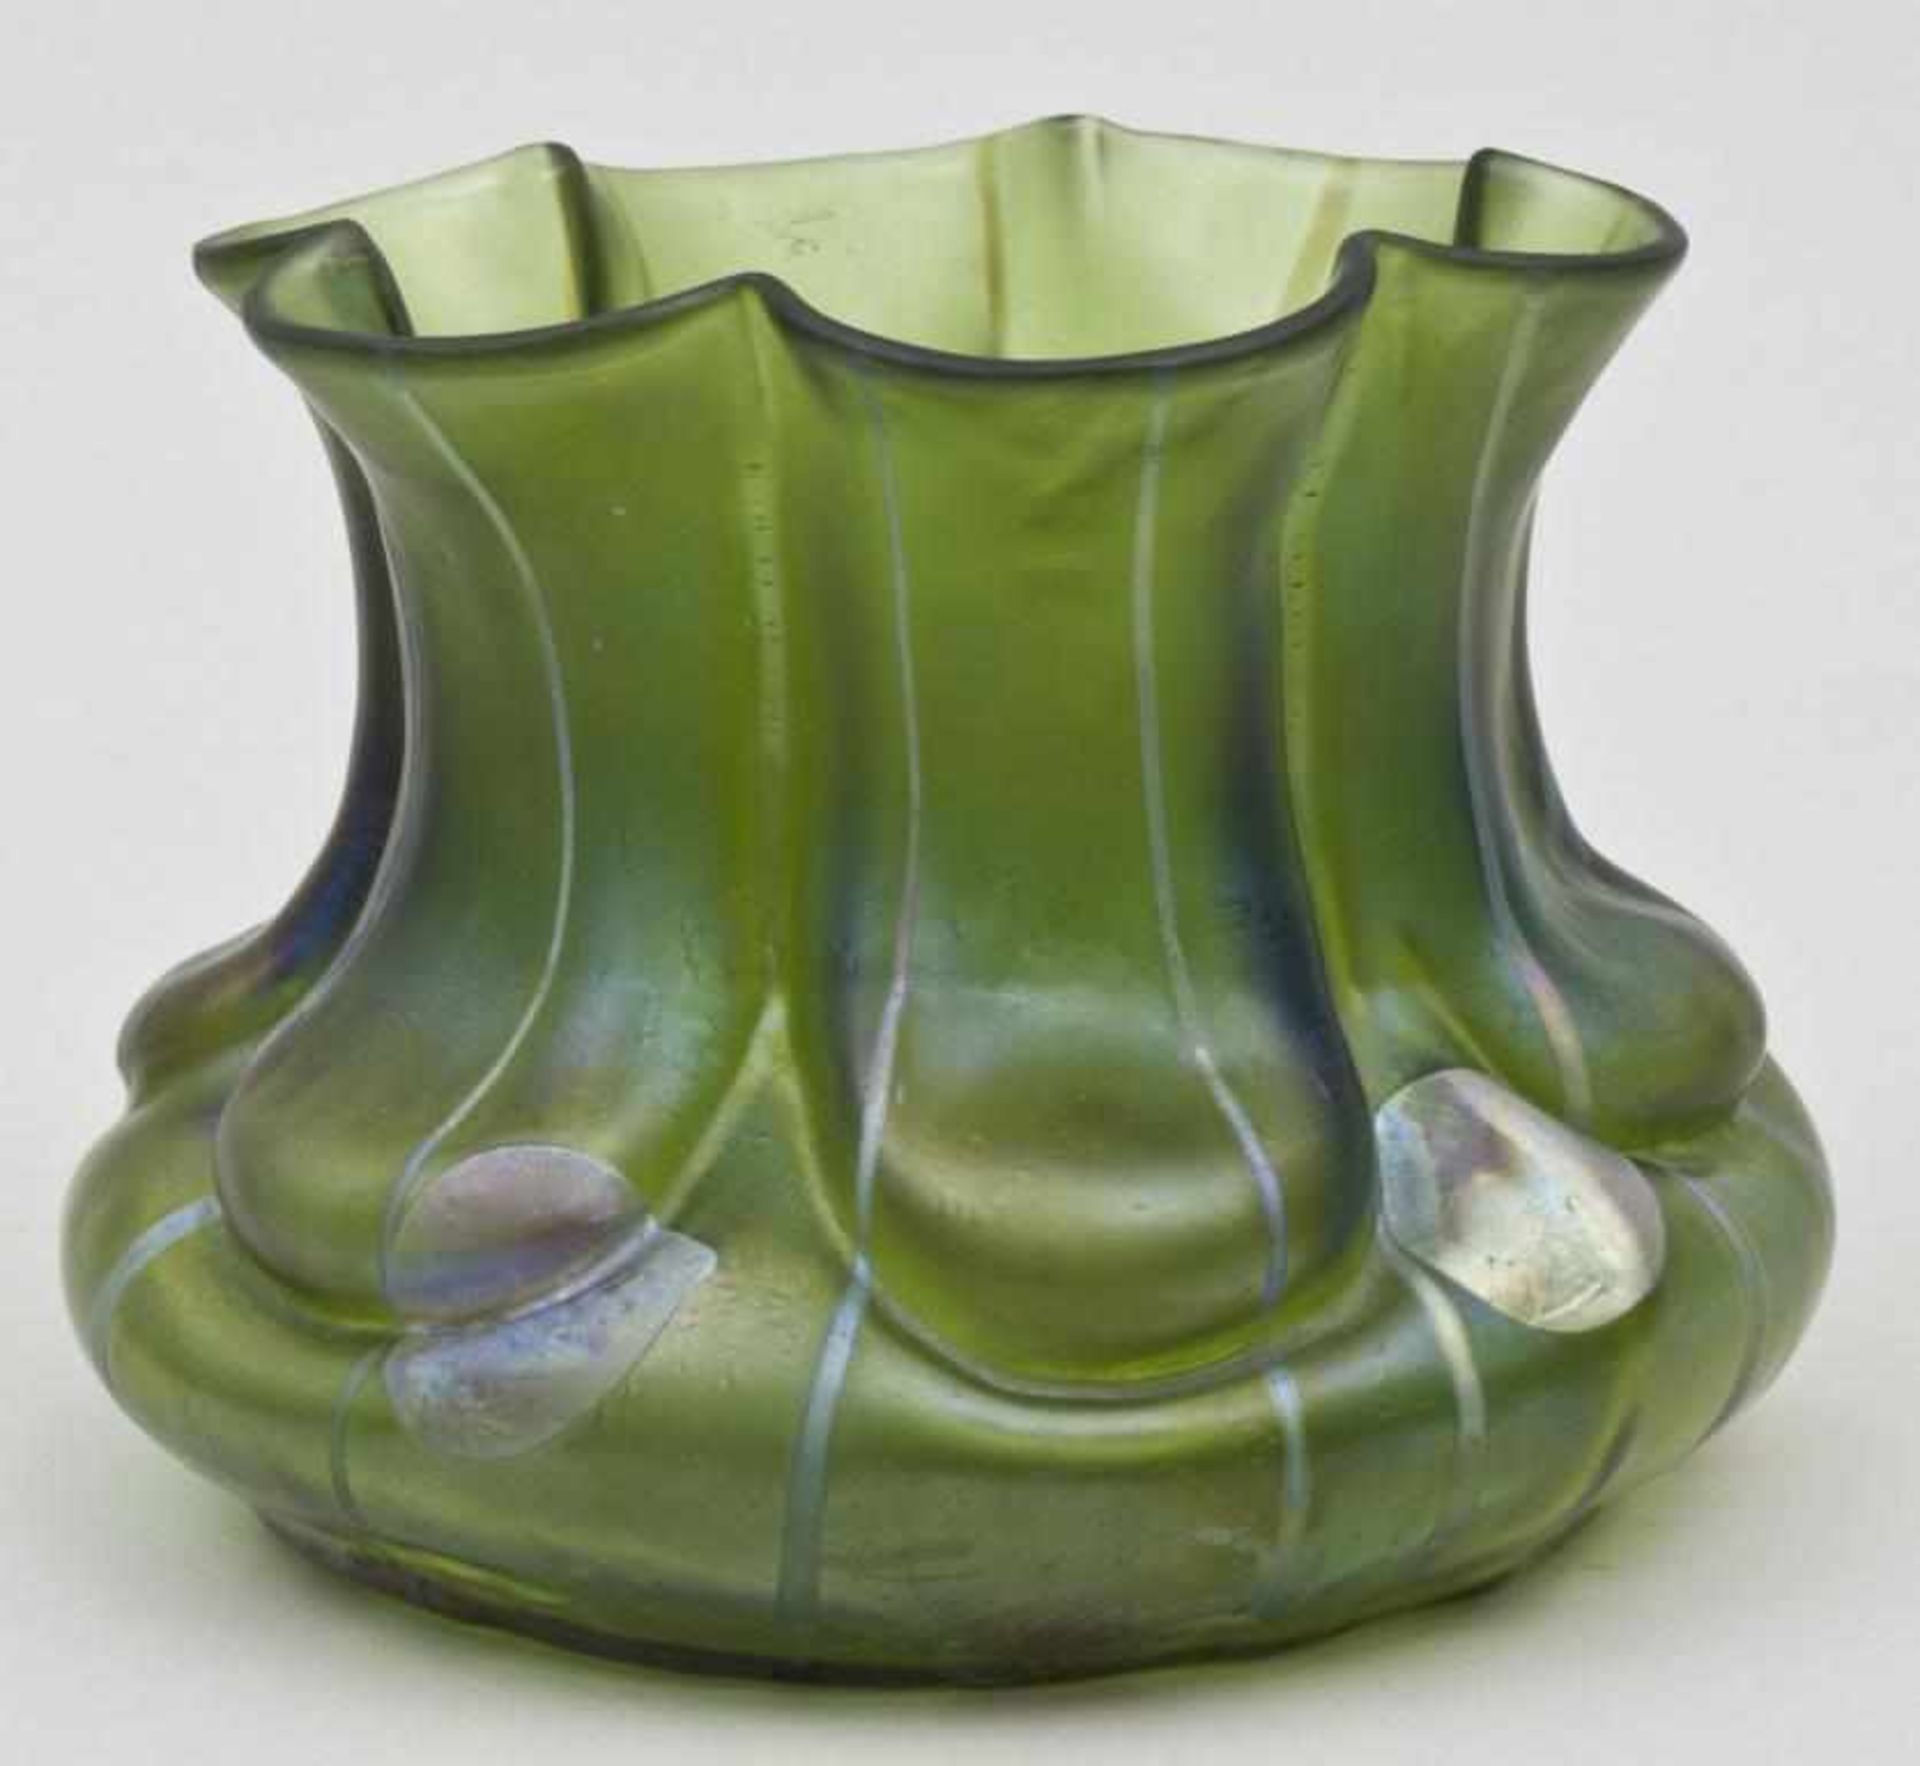 Jugendstil Vase 'Streifen und Flecken' / Art Nouveau Vase With Stripes and Spots, Wilhelm Kralik